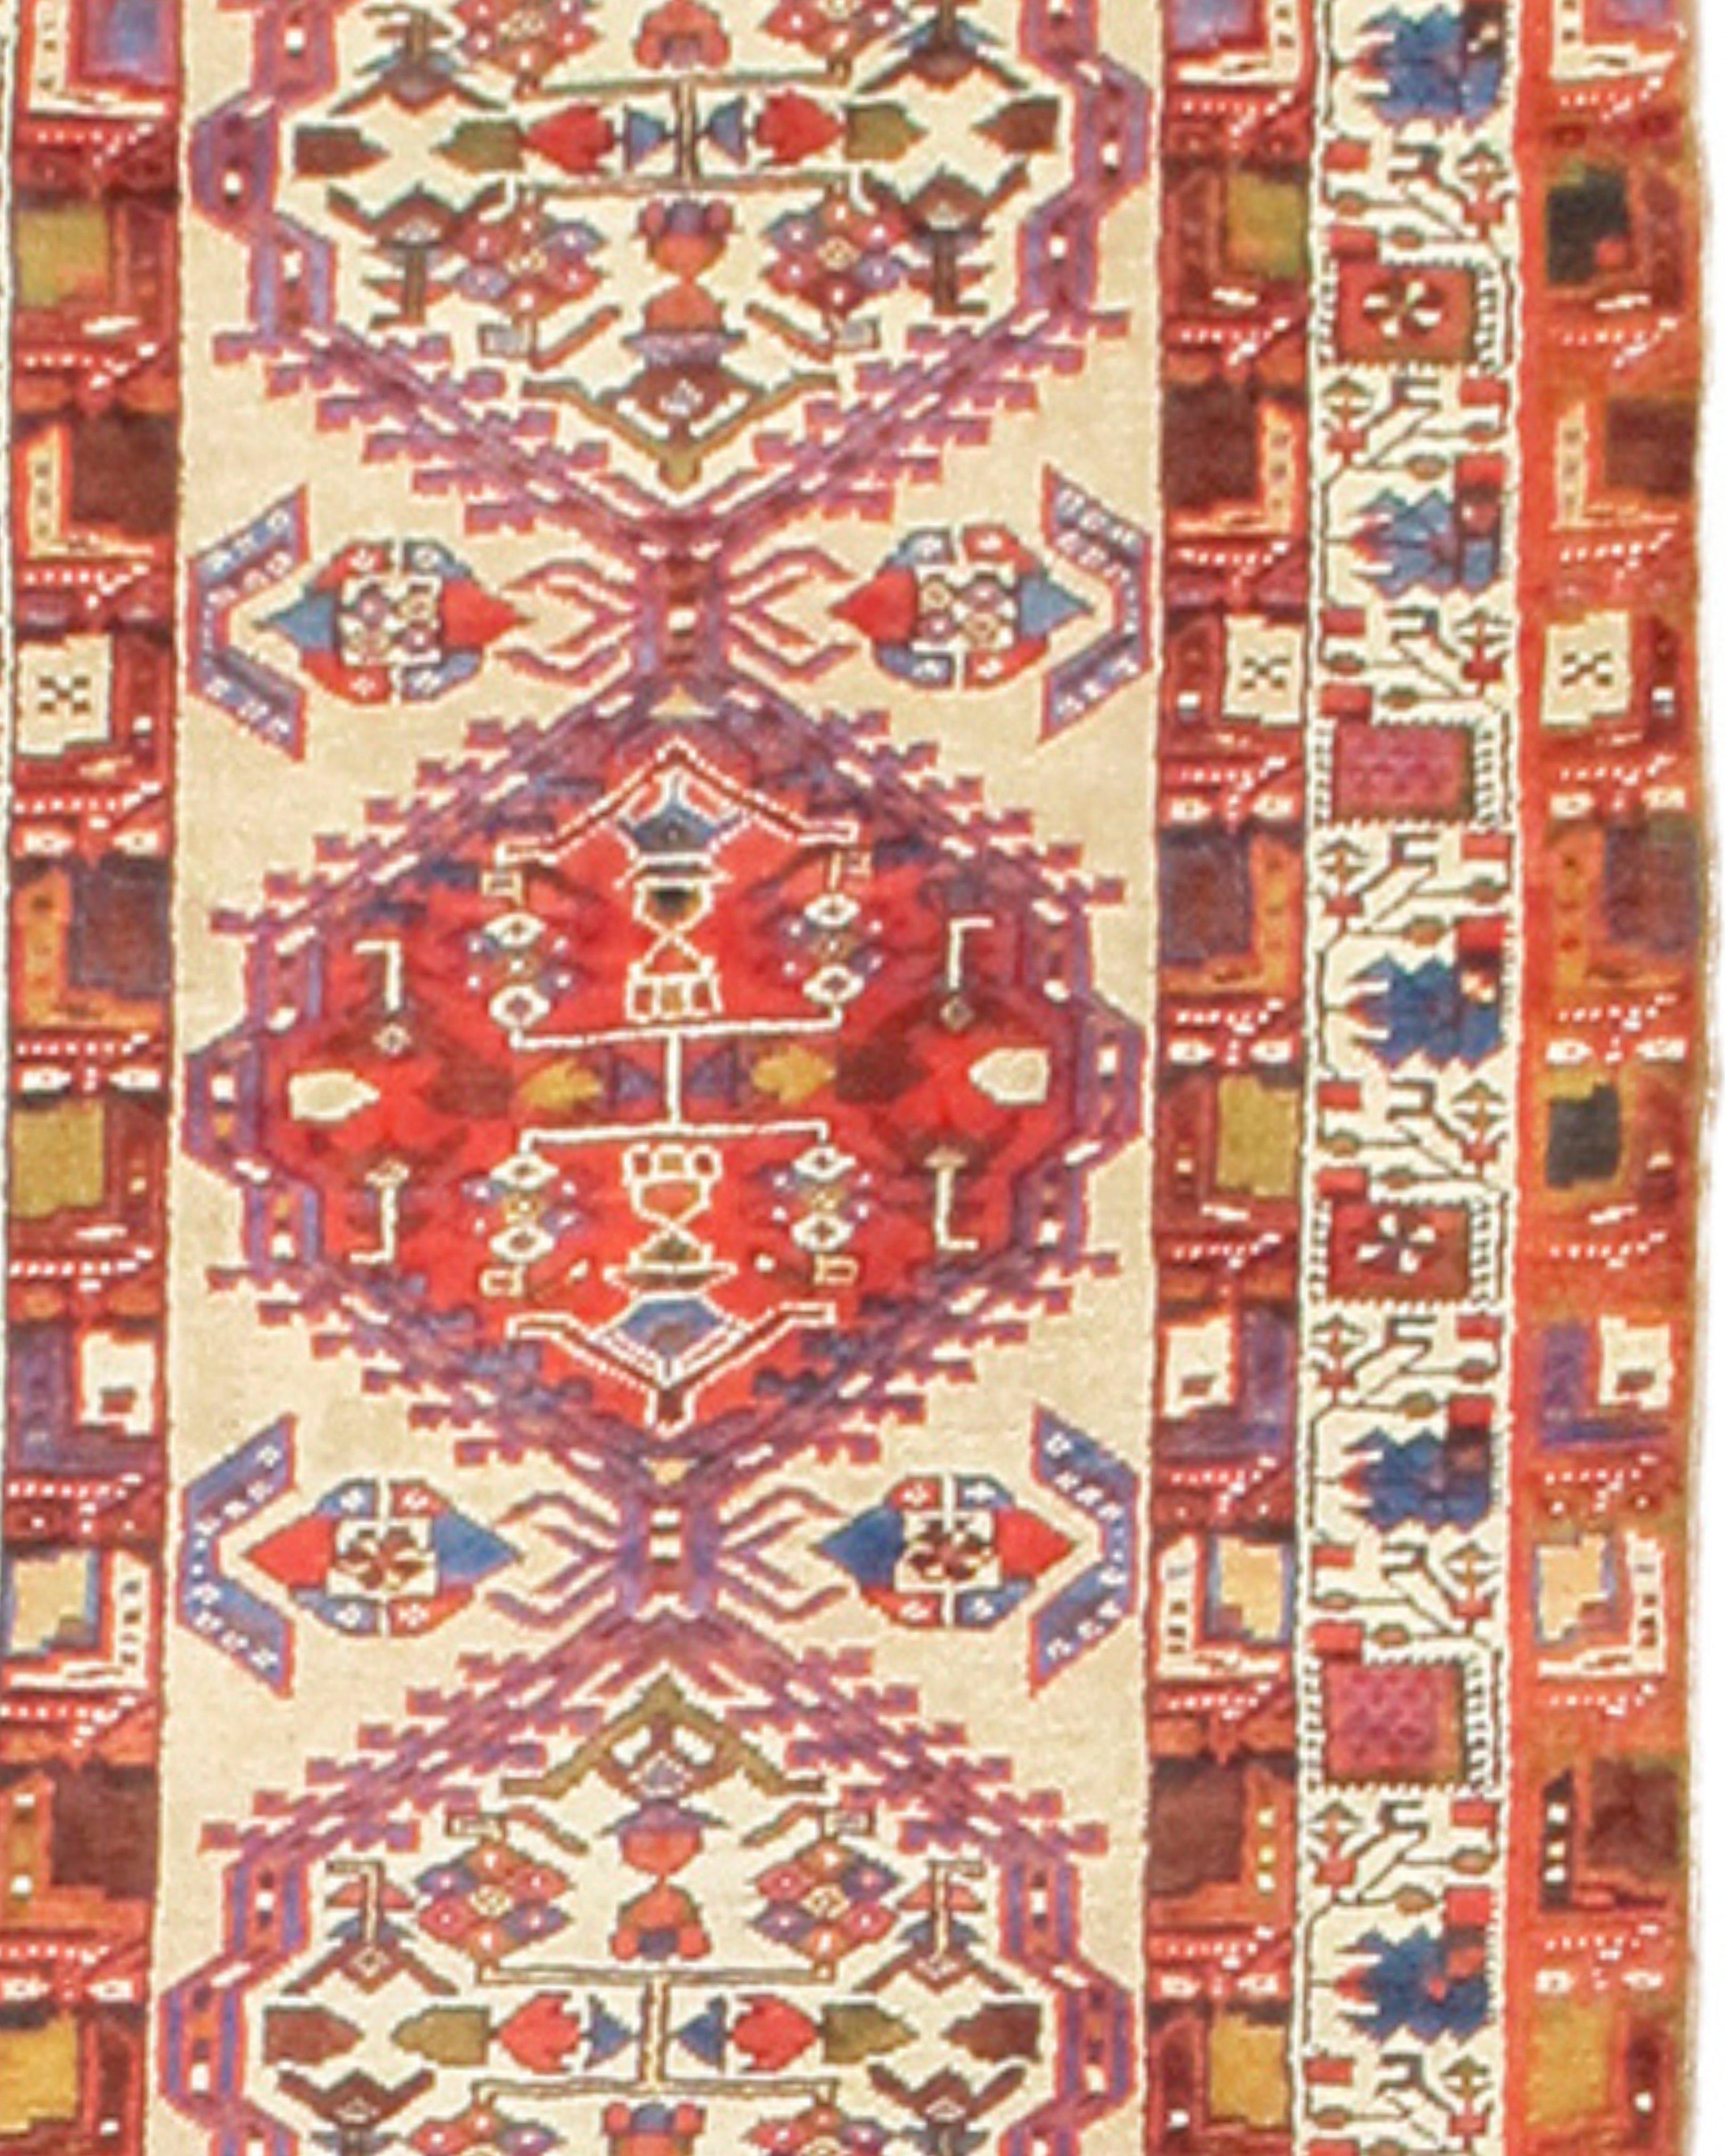 Ancien tapis de course persan Serab, 19e siècle

Informations supplémentaires :
Dimensions : 3'4